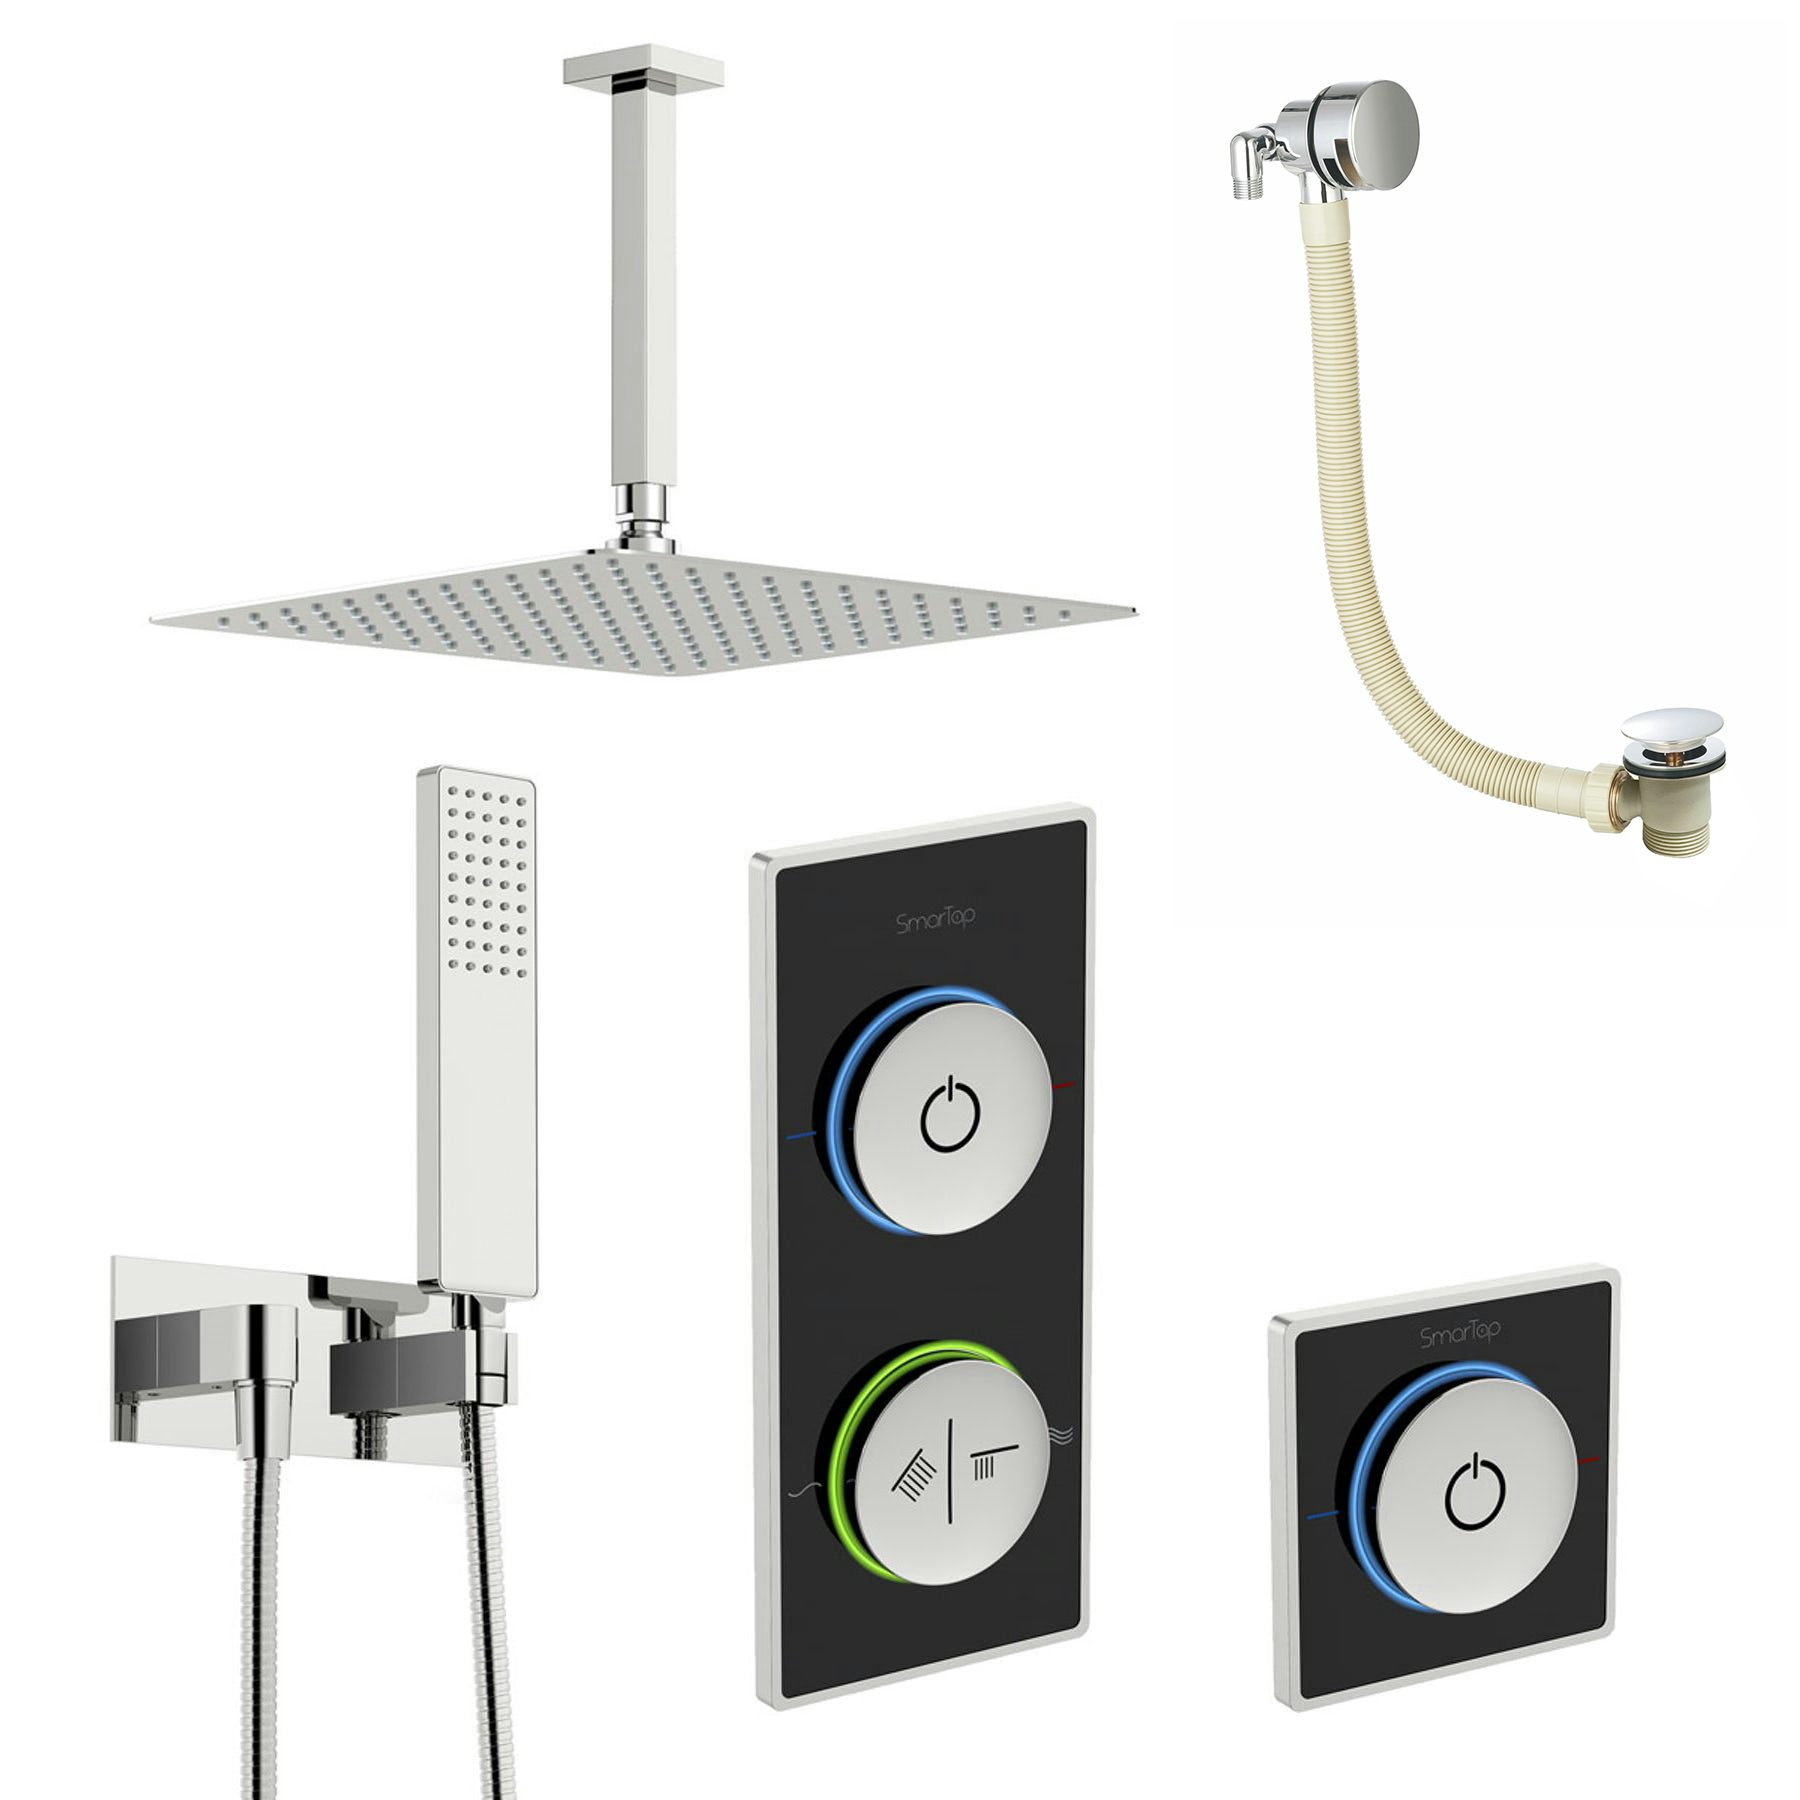 SmarTap black smart shower system with complete square ceiling shower outlet bath set